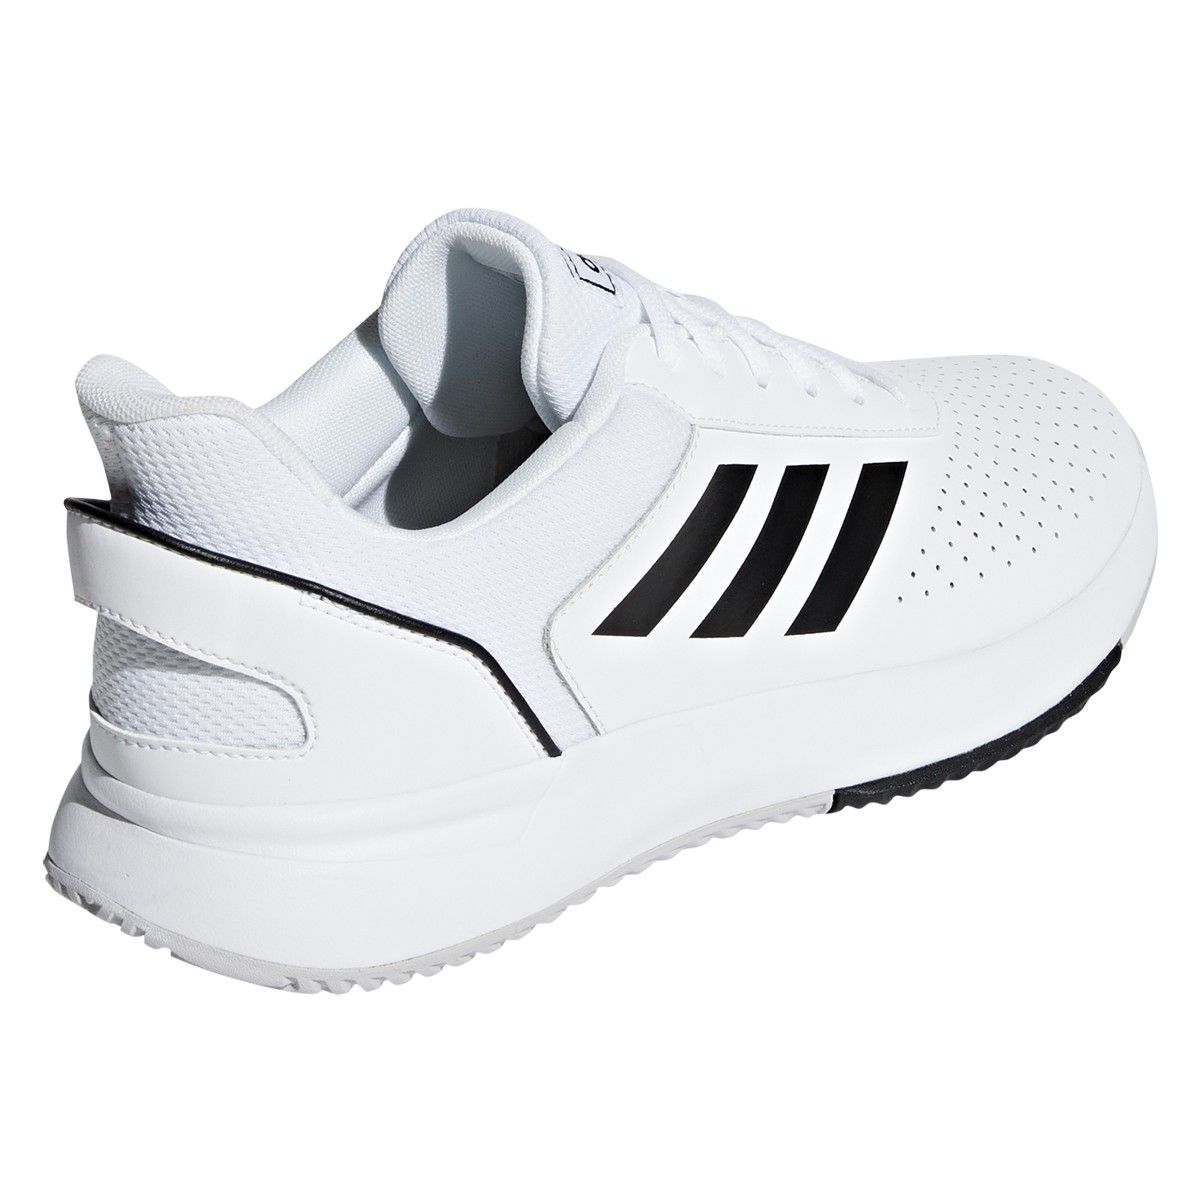 adidas Courtsmash Men's Tennis Shoes F36718